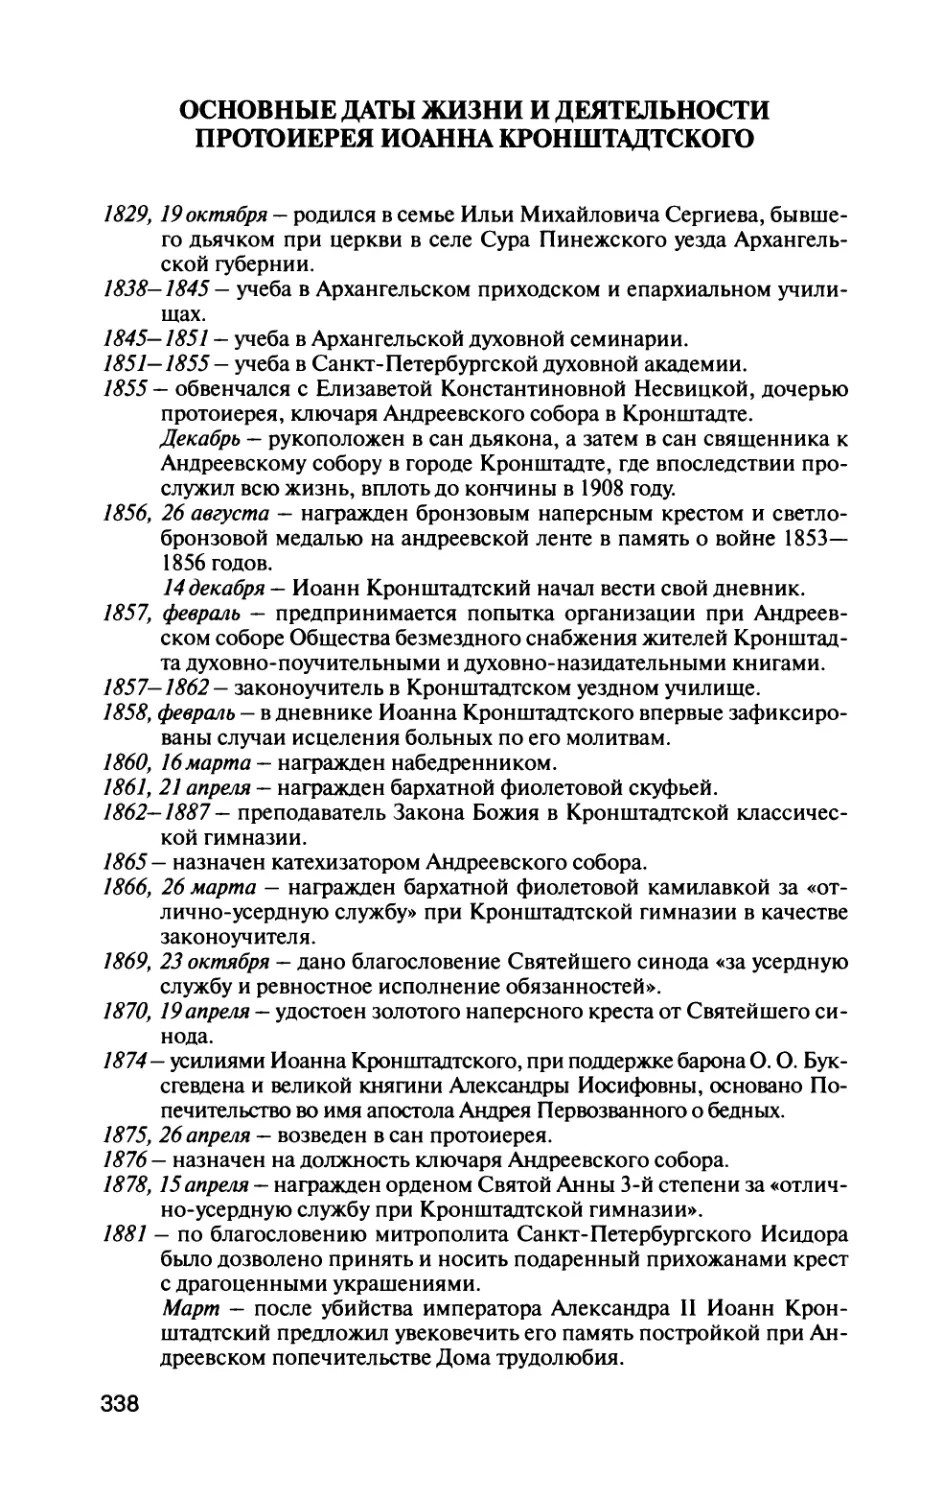 Основные даты жизни и деятельности протоиерея Иоанна Кронштадтского